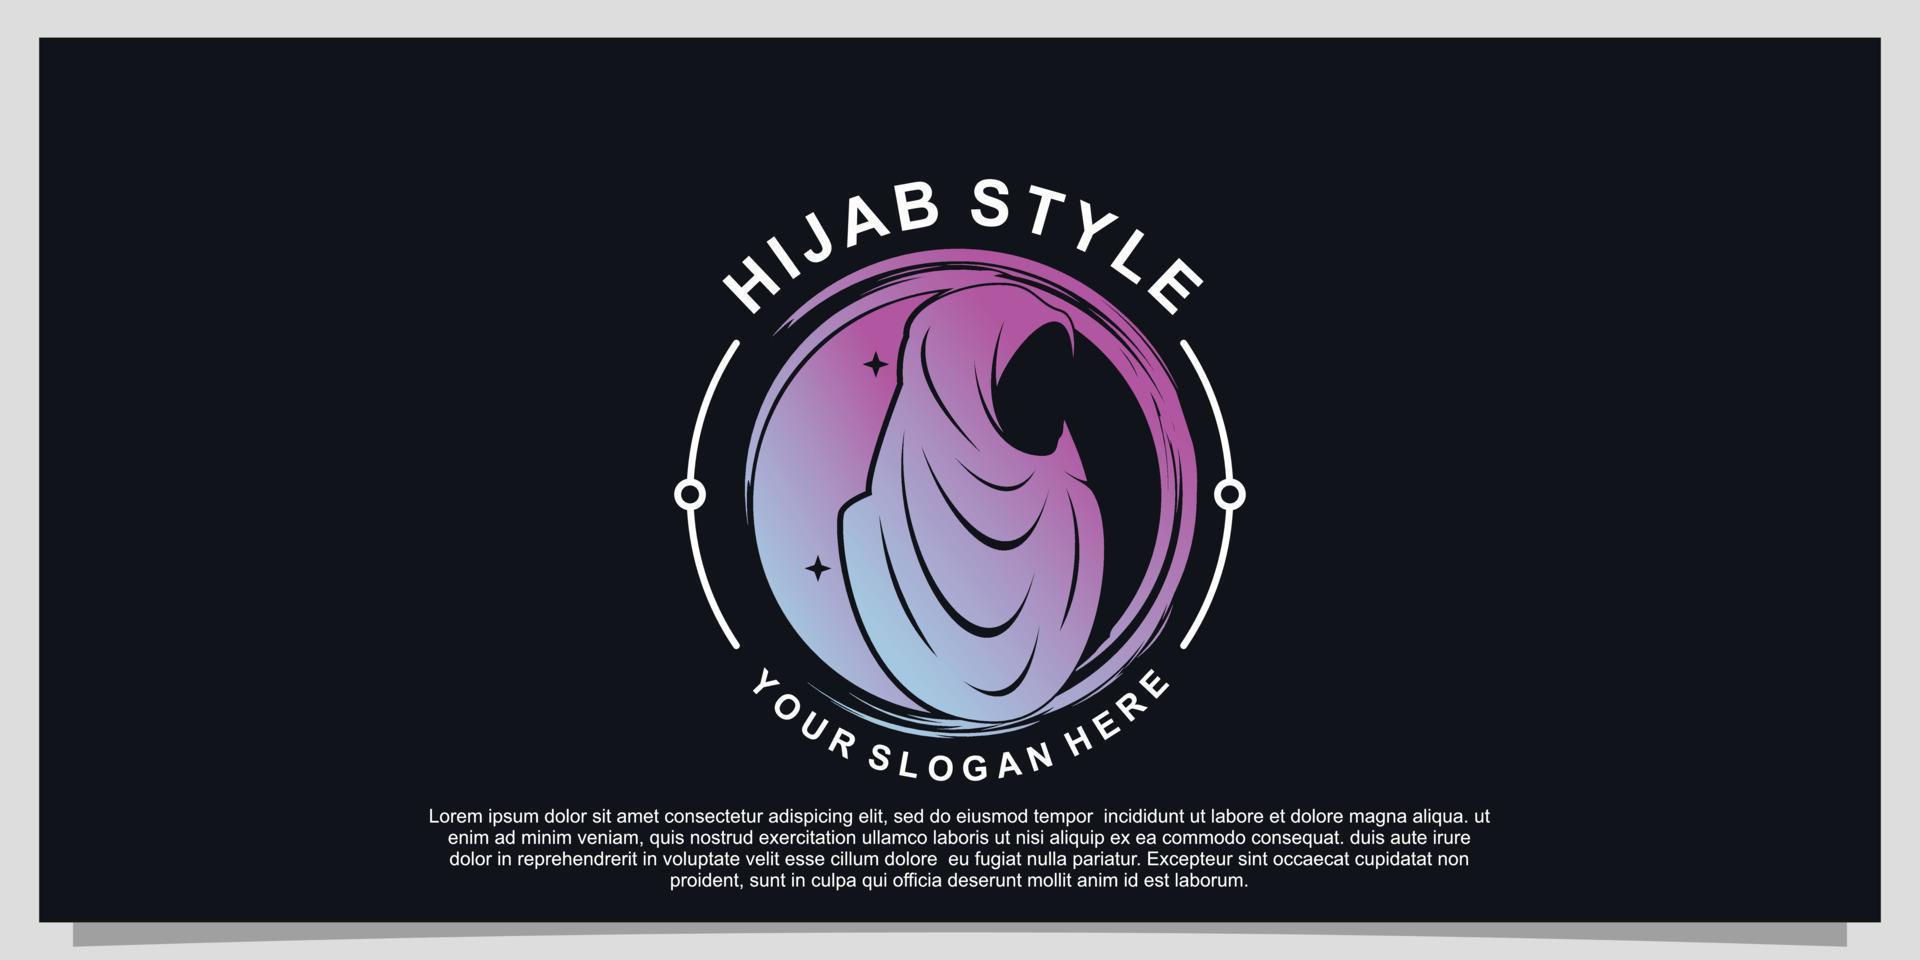 Logo-Design im Hijab-Stil für Hijab- oder Schalmode-Muslimah mit einzigartigem Konzept Premium-Vektor Teil 3 vektor